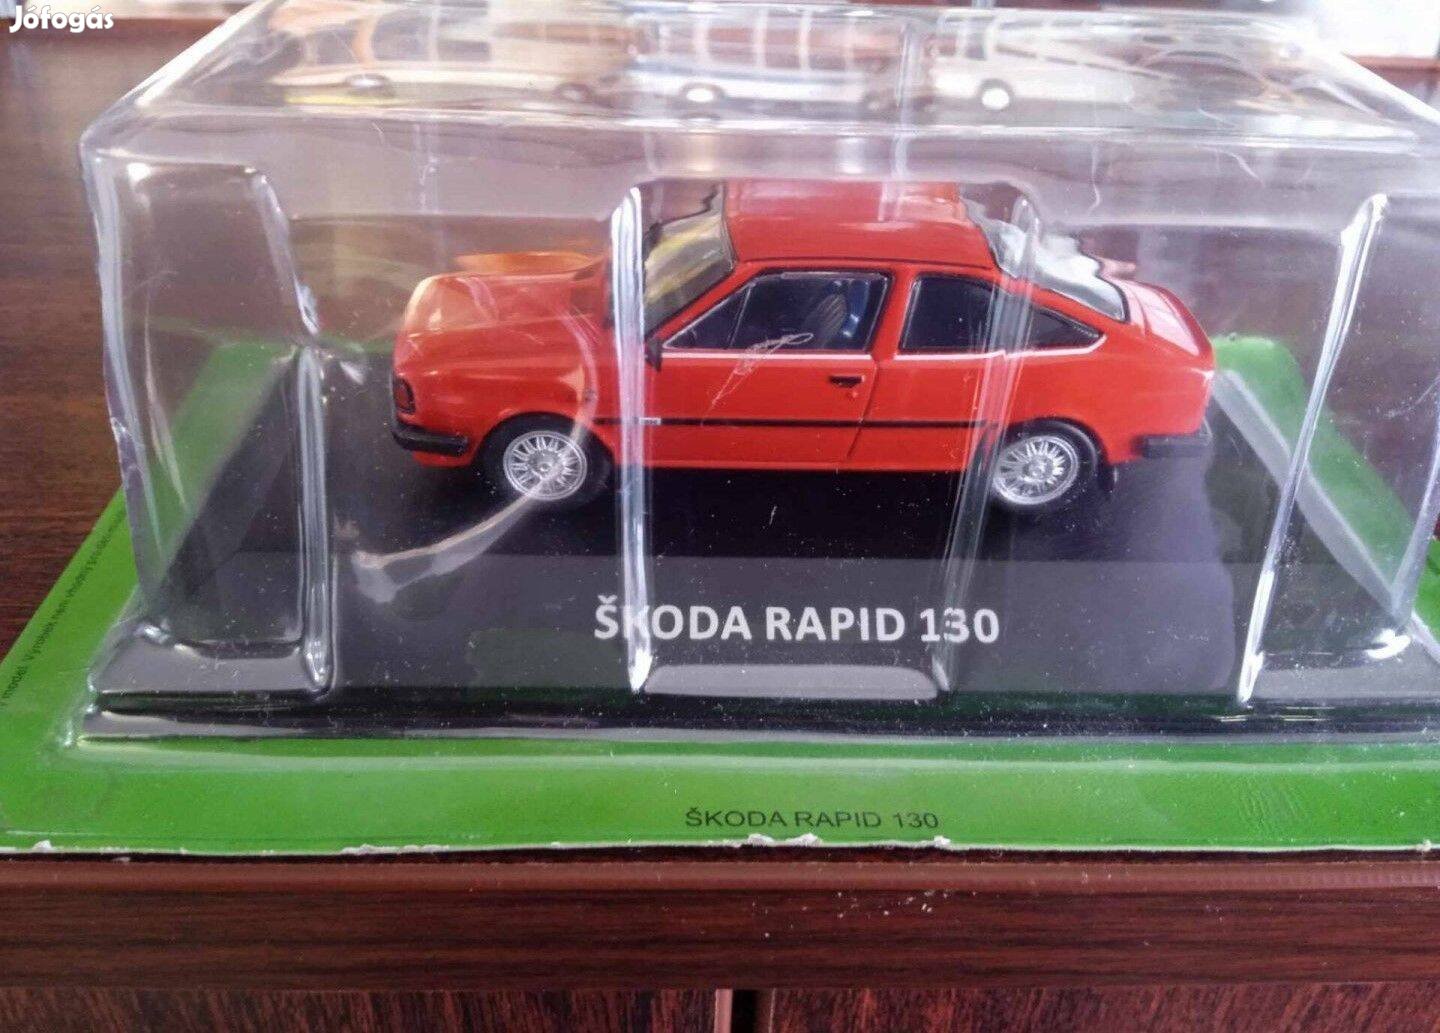 Skoda Rapid 130 kisauto modell 1/43 Eladó